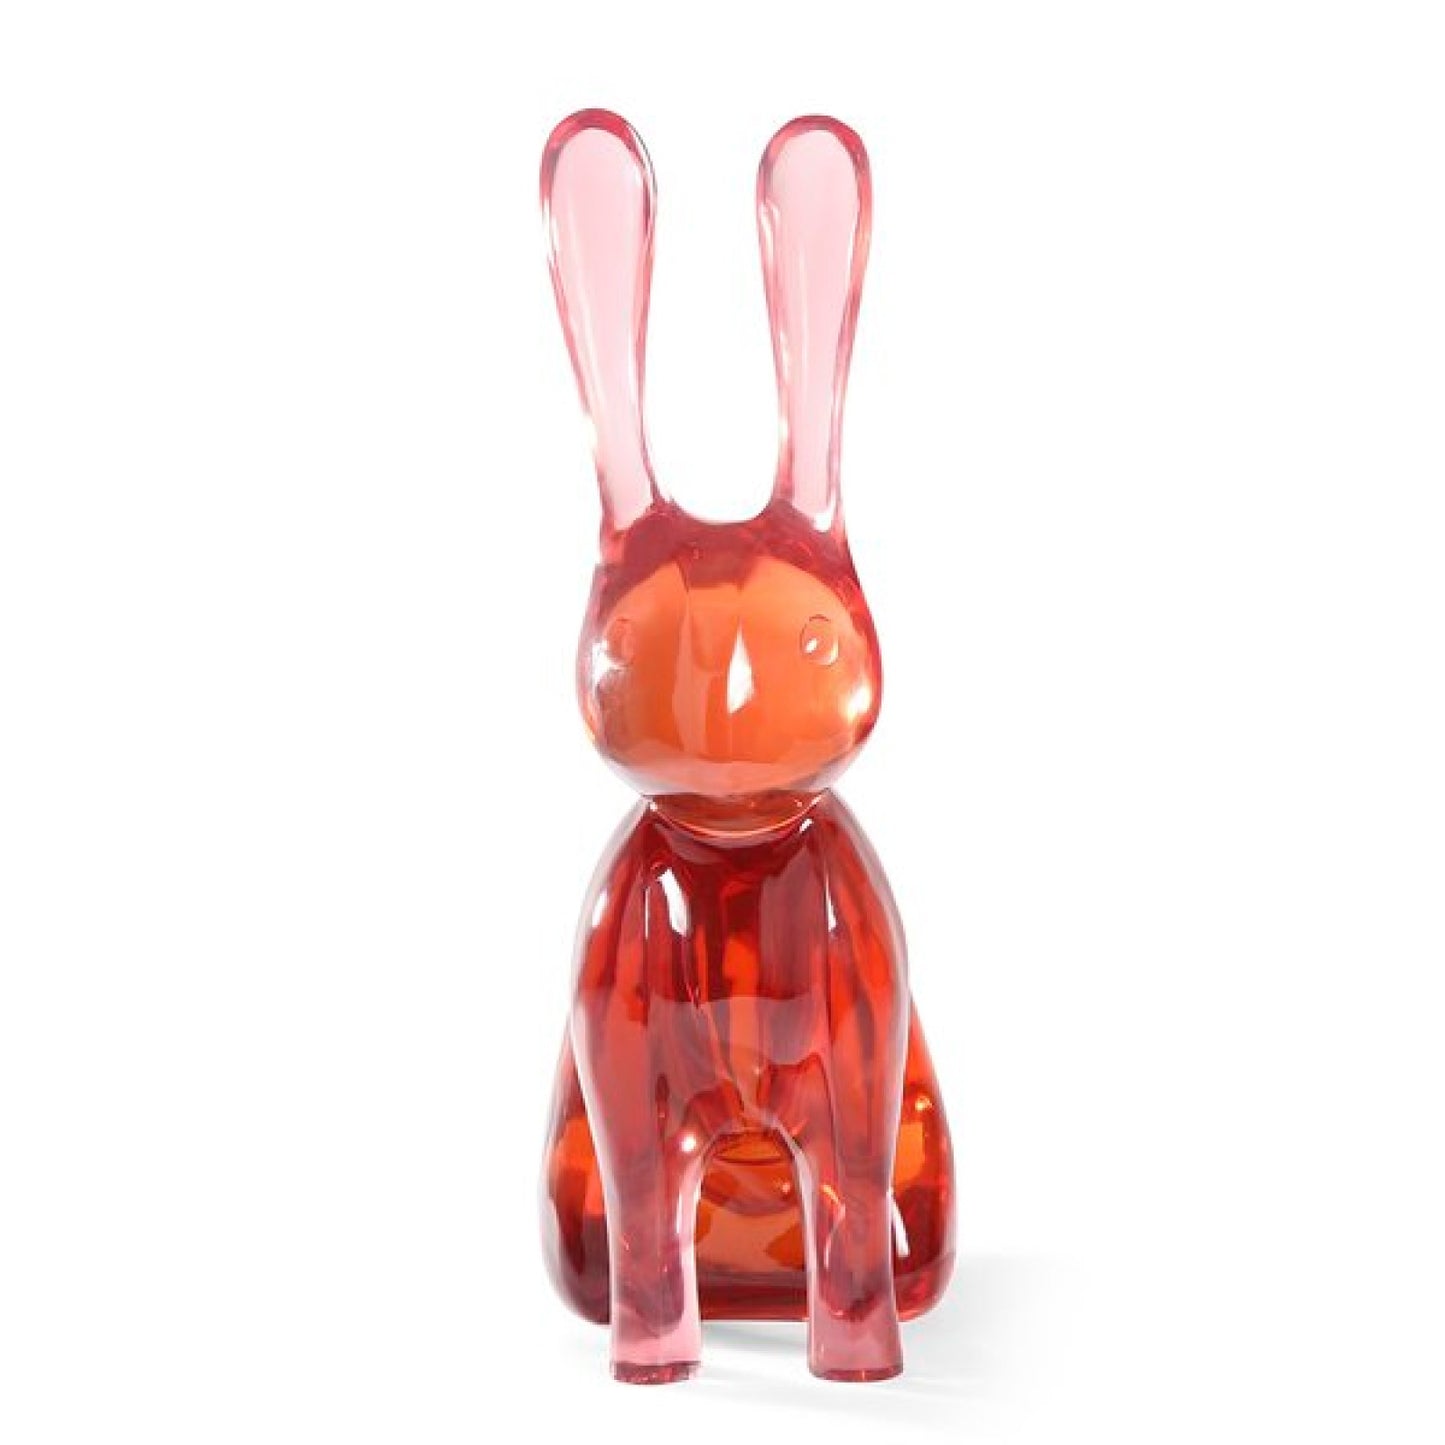 Giant acrylic rabbit